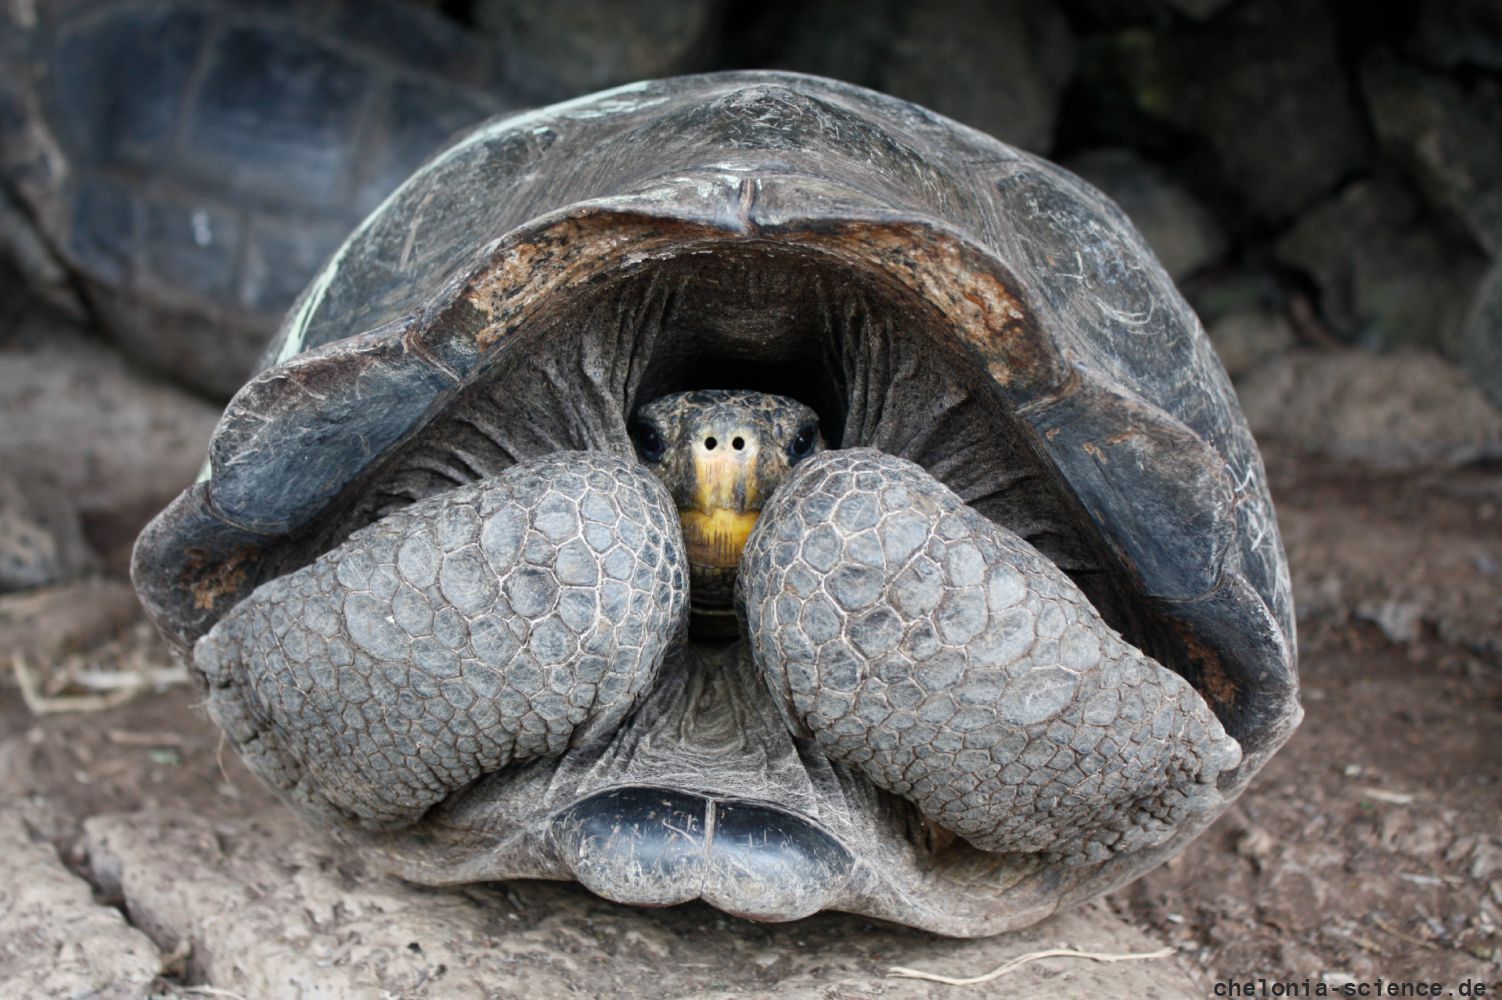 Floreana-Riesenschildkröte, Chelonoidis niger, Zuchtweibchen Z7. Bei diesem Weibchen handelt es sich um eine Hybride mit hohem C. niger Anteil, welches zur Nachzucht von C. niger eingesetzt wird. – © Washington Tapia